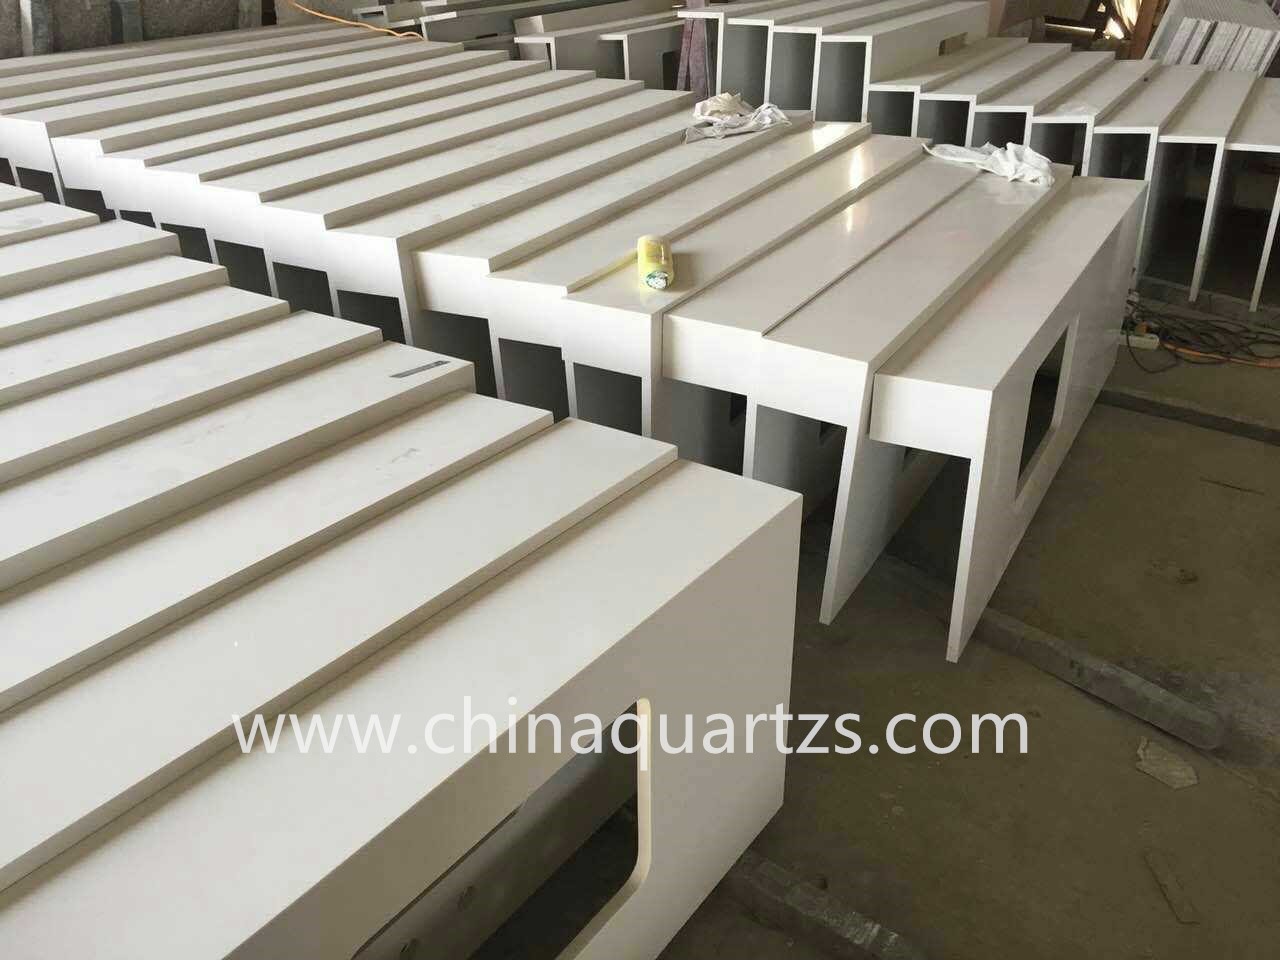 White quartz countertops